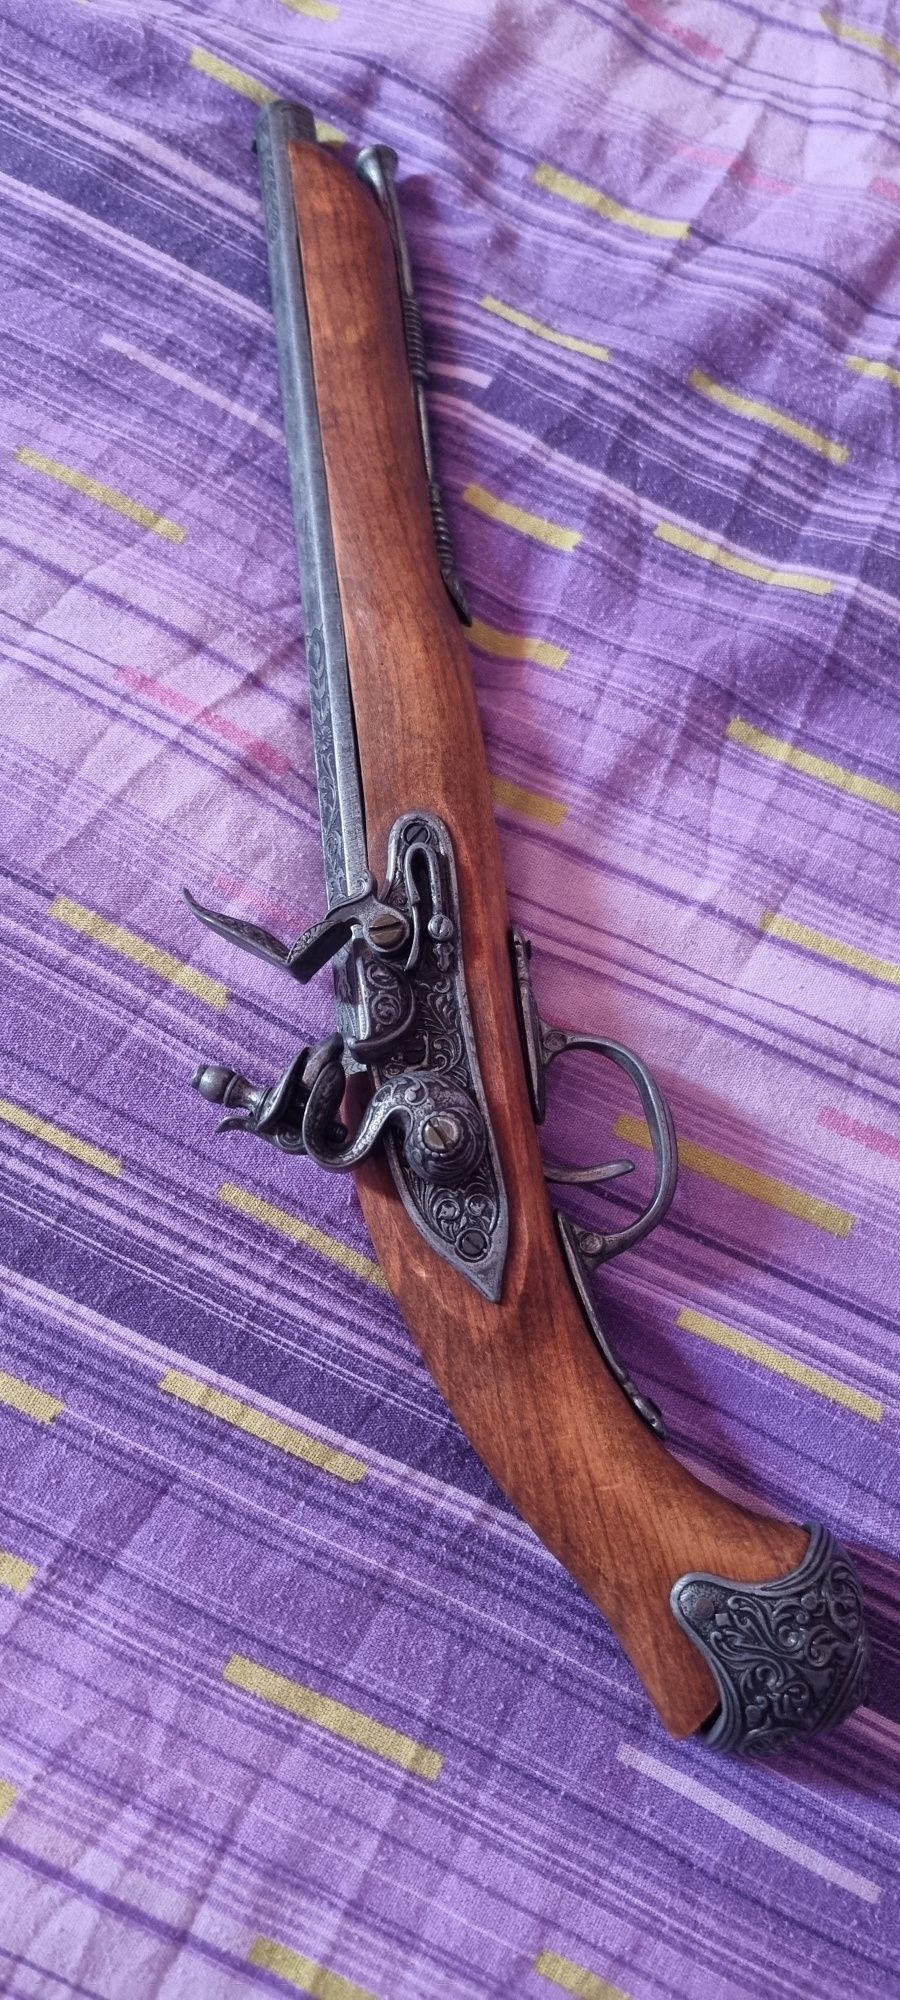 Arme vechi aduse de bunicu din franta ln urma cu 50 de ani ce stiu ei